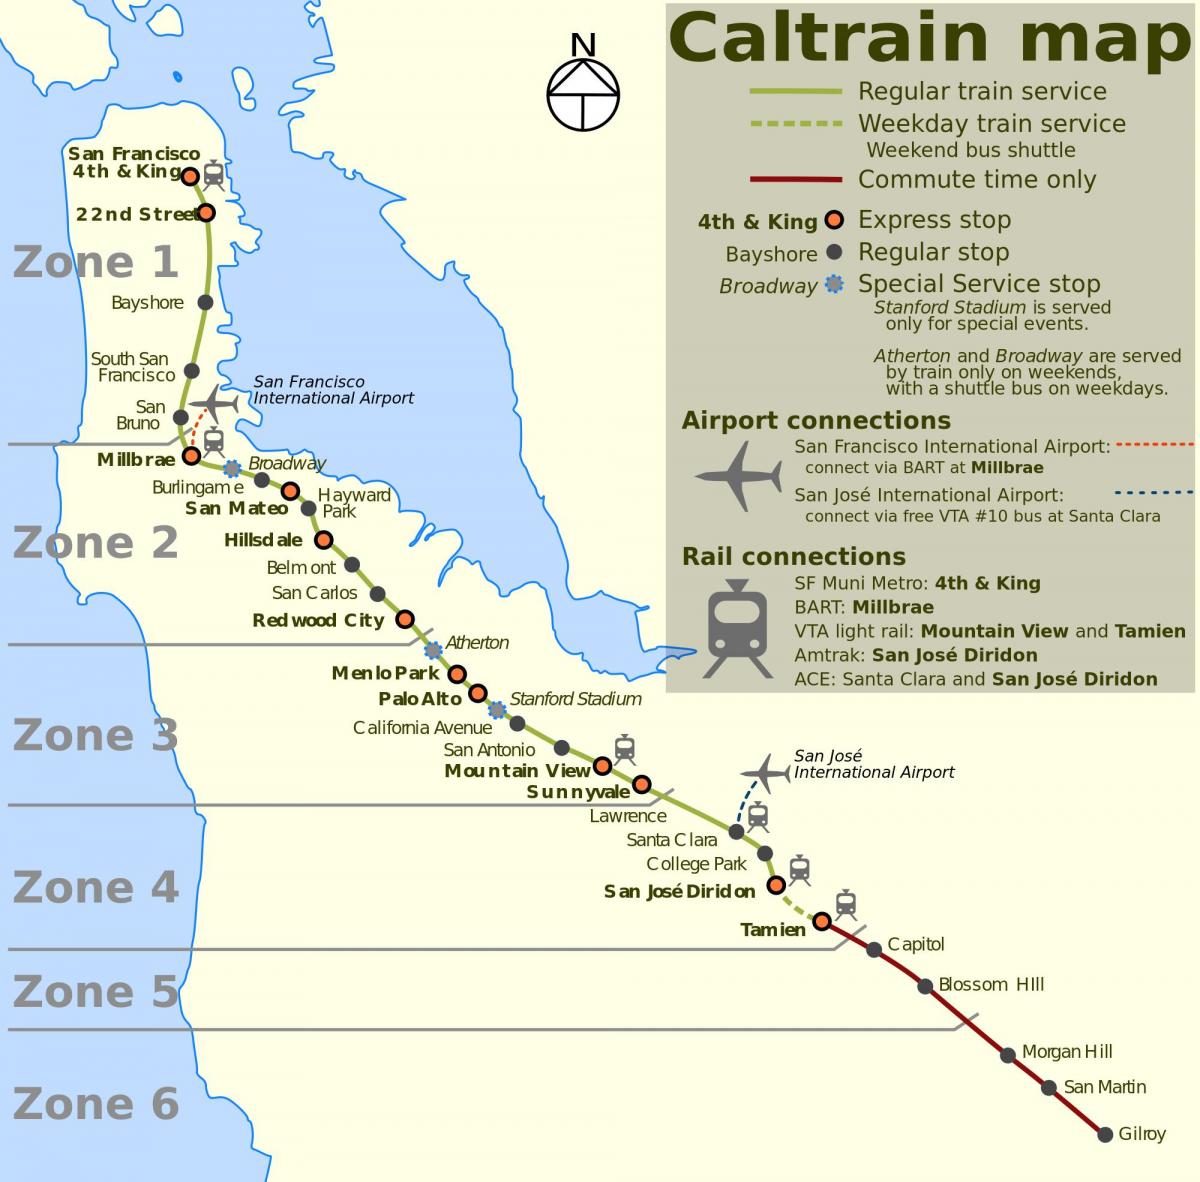 旧金山的加州火车的地图